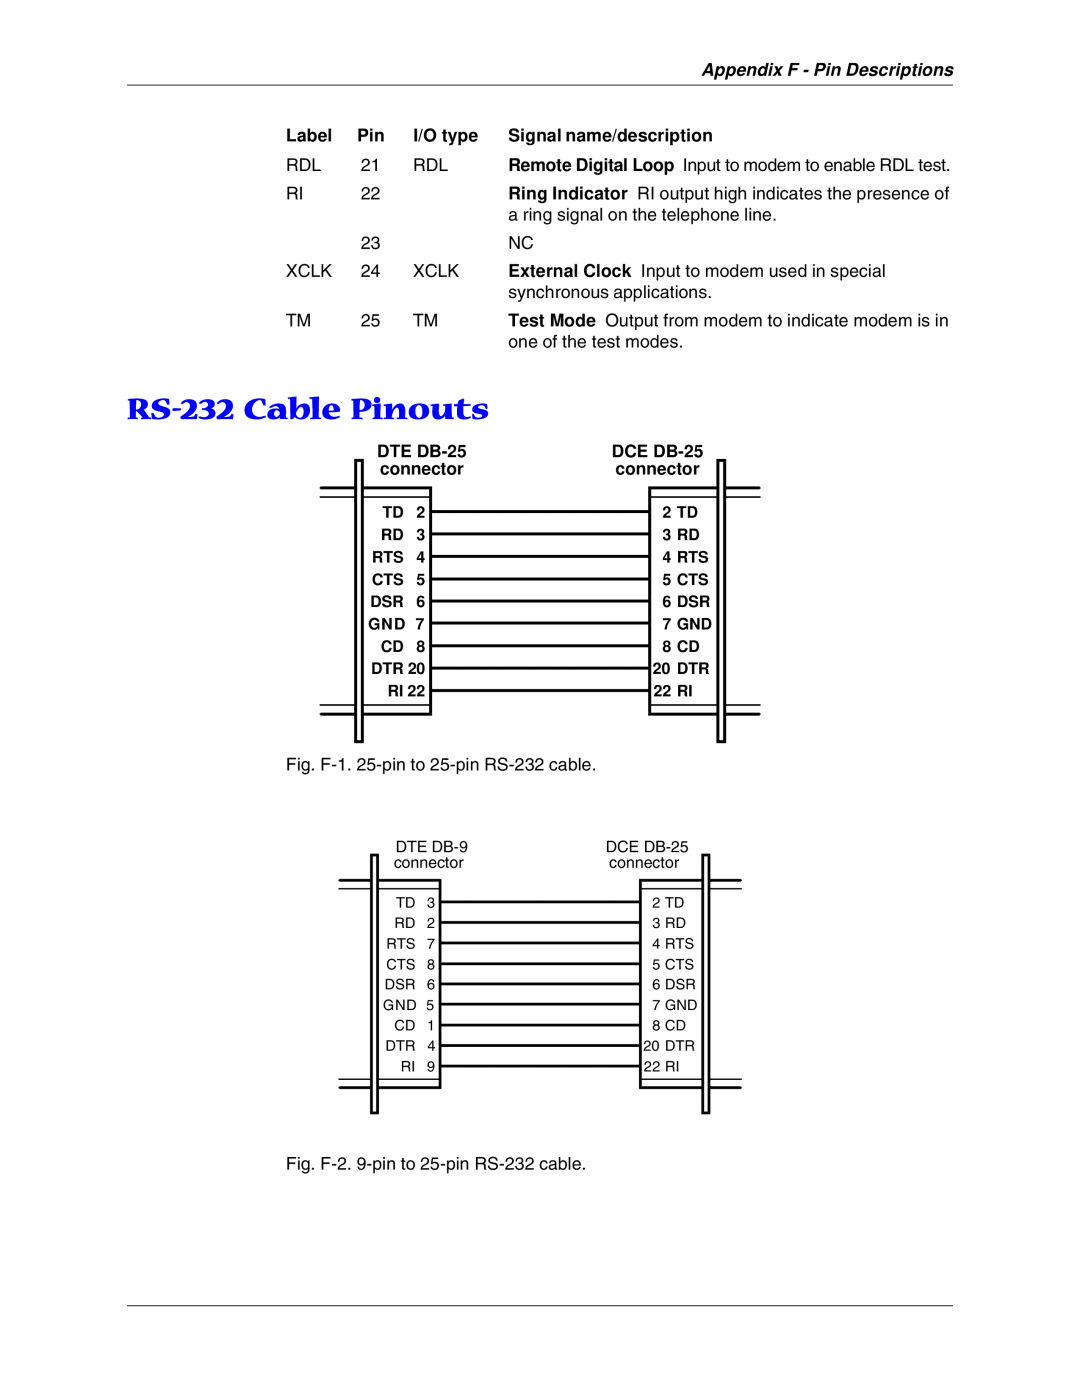 Multitech MT5600BA, MT5600BL manual RS-232 Cable Pinouts, Appendix F - Pin Descriptions 